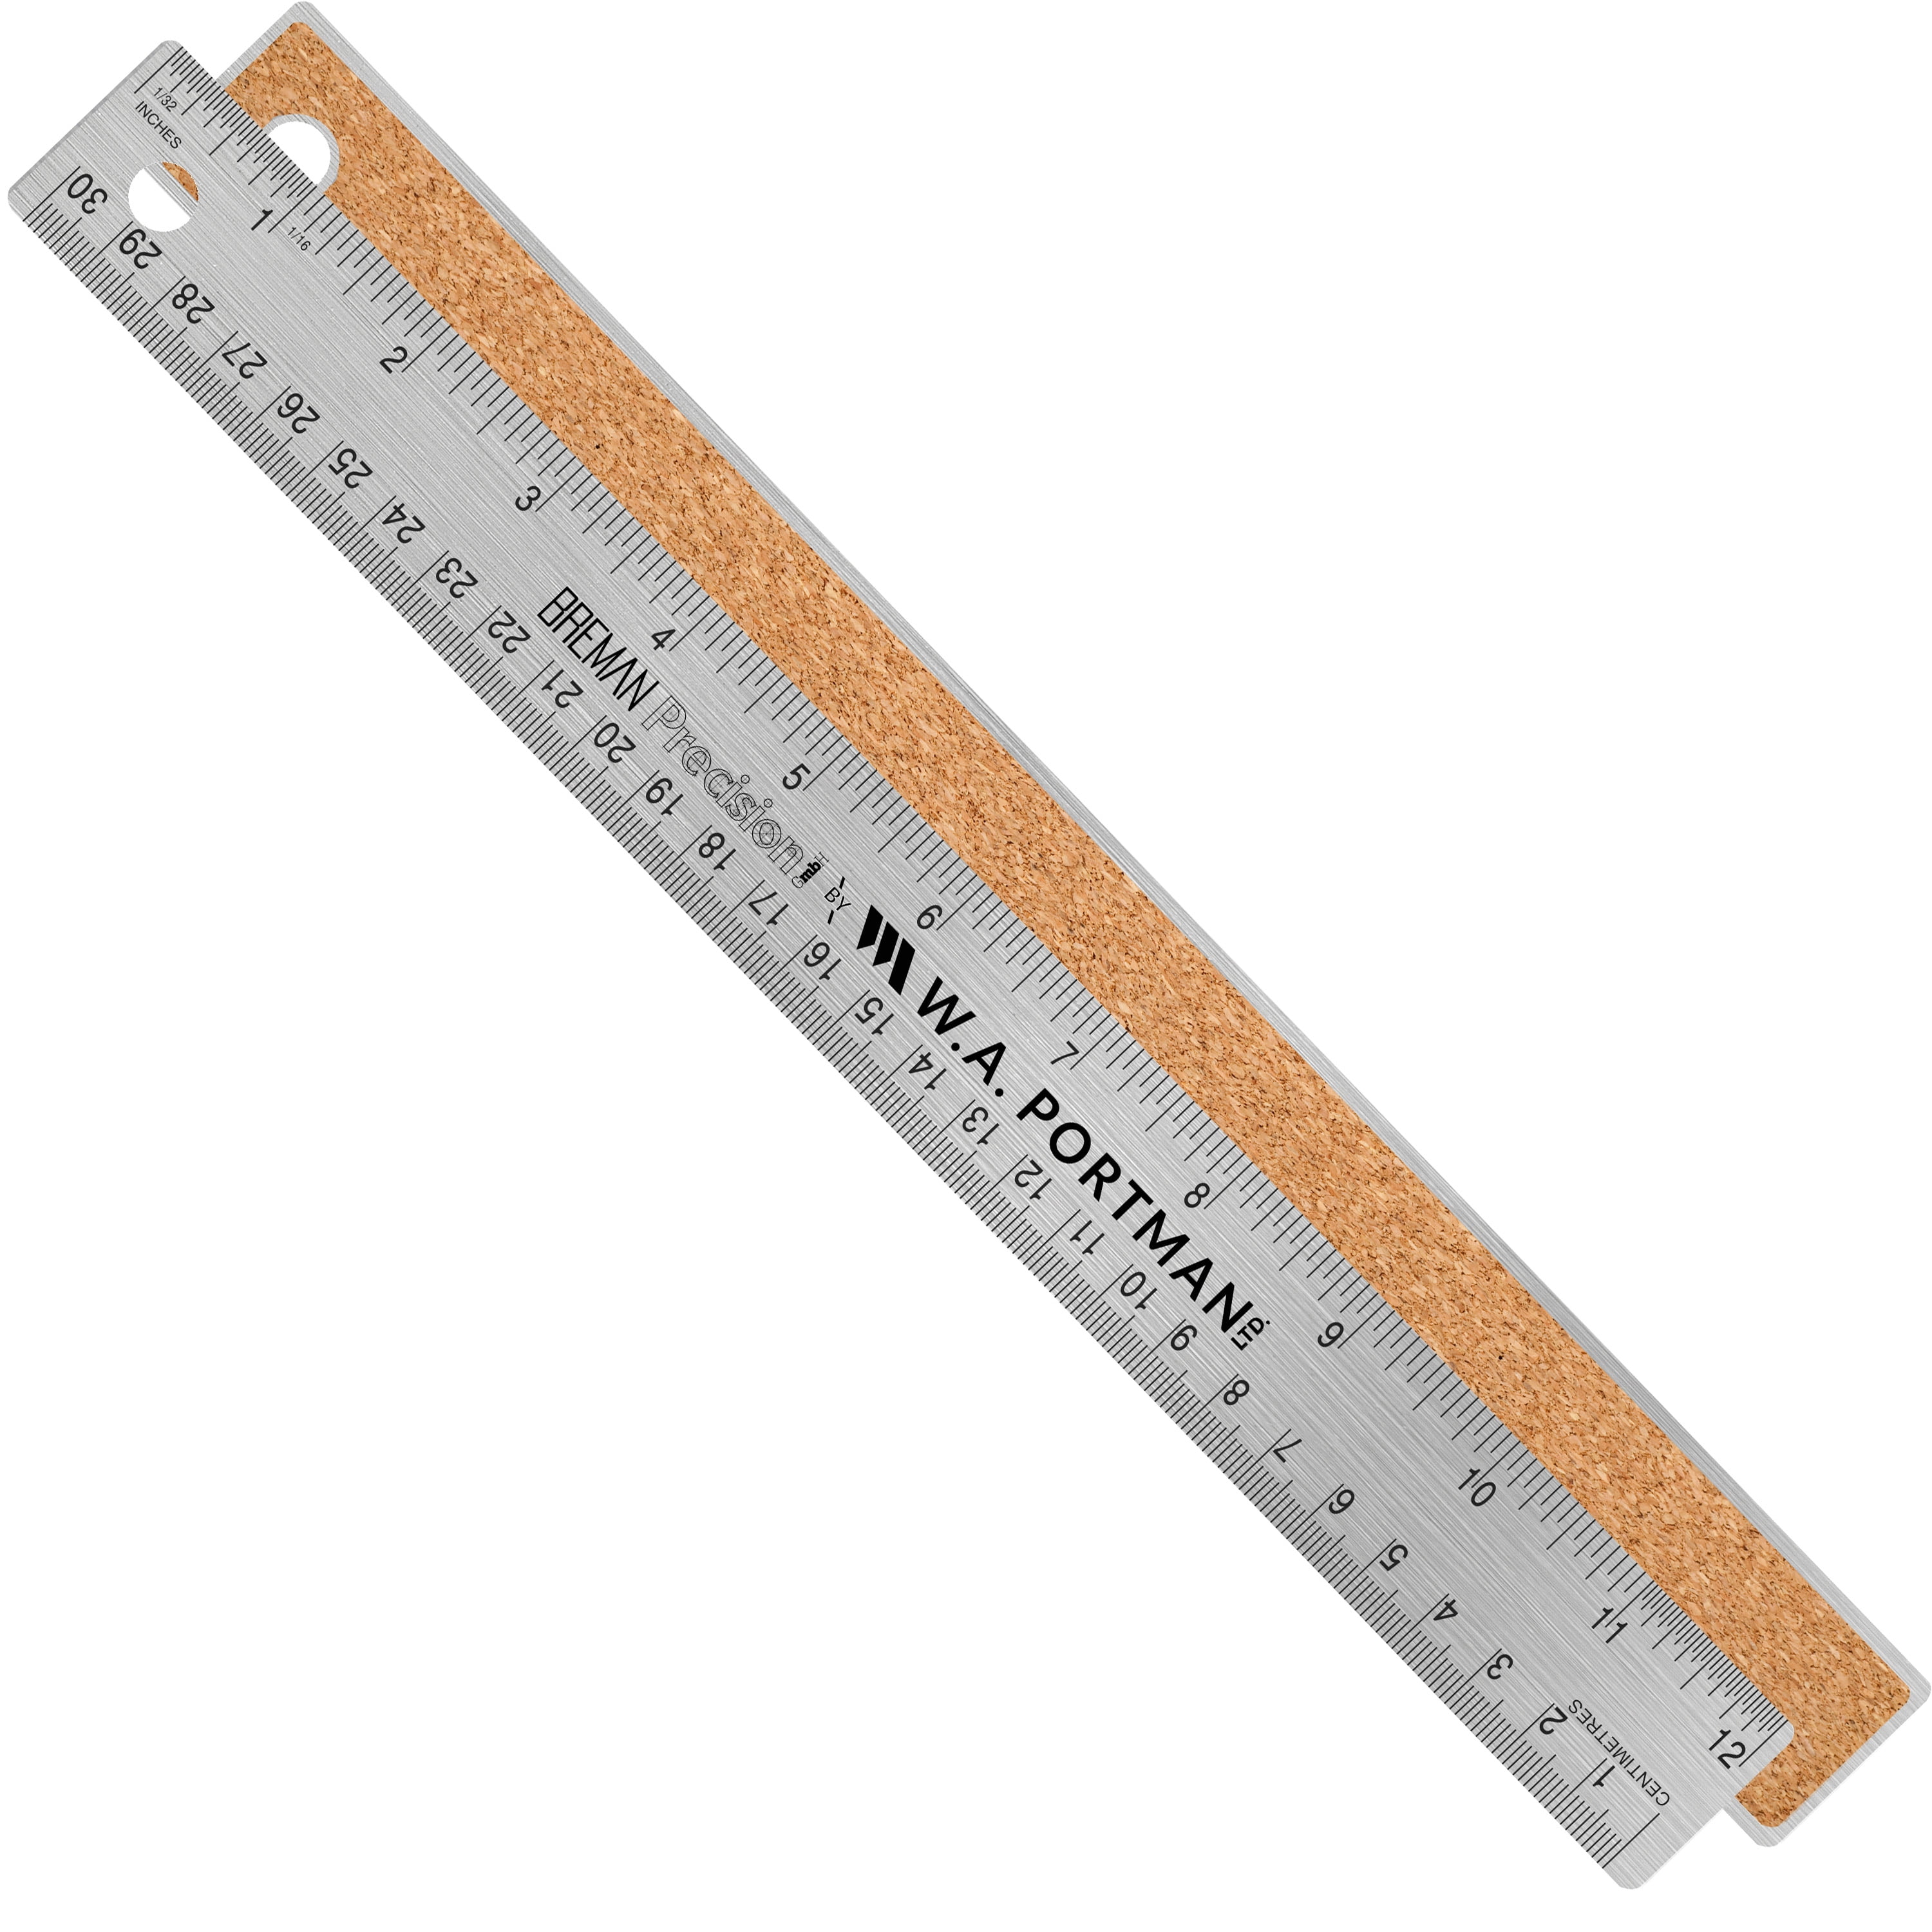 Breman Precision Stainless Steel Ruler, 12-inch Cork Back Ruler 2